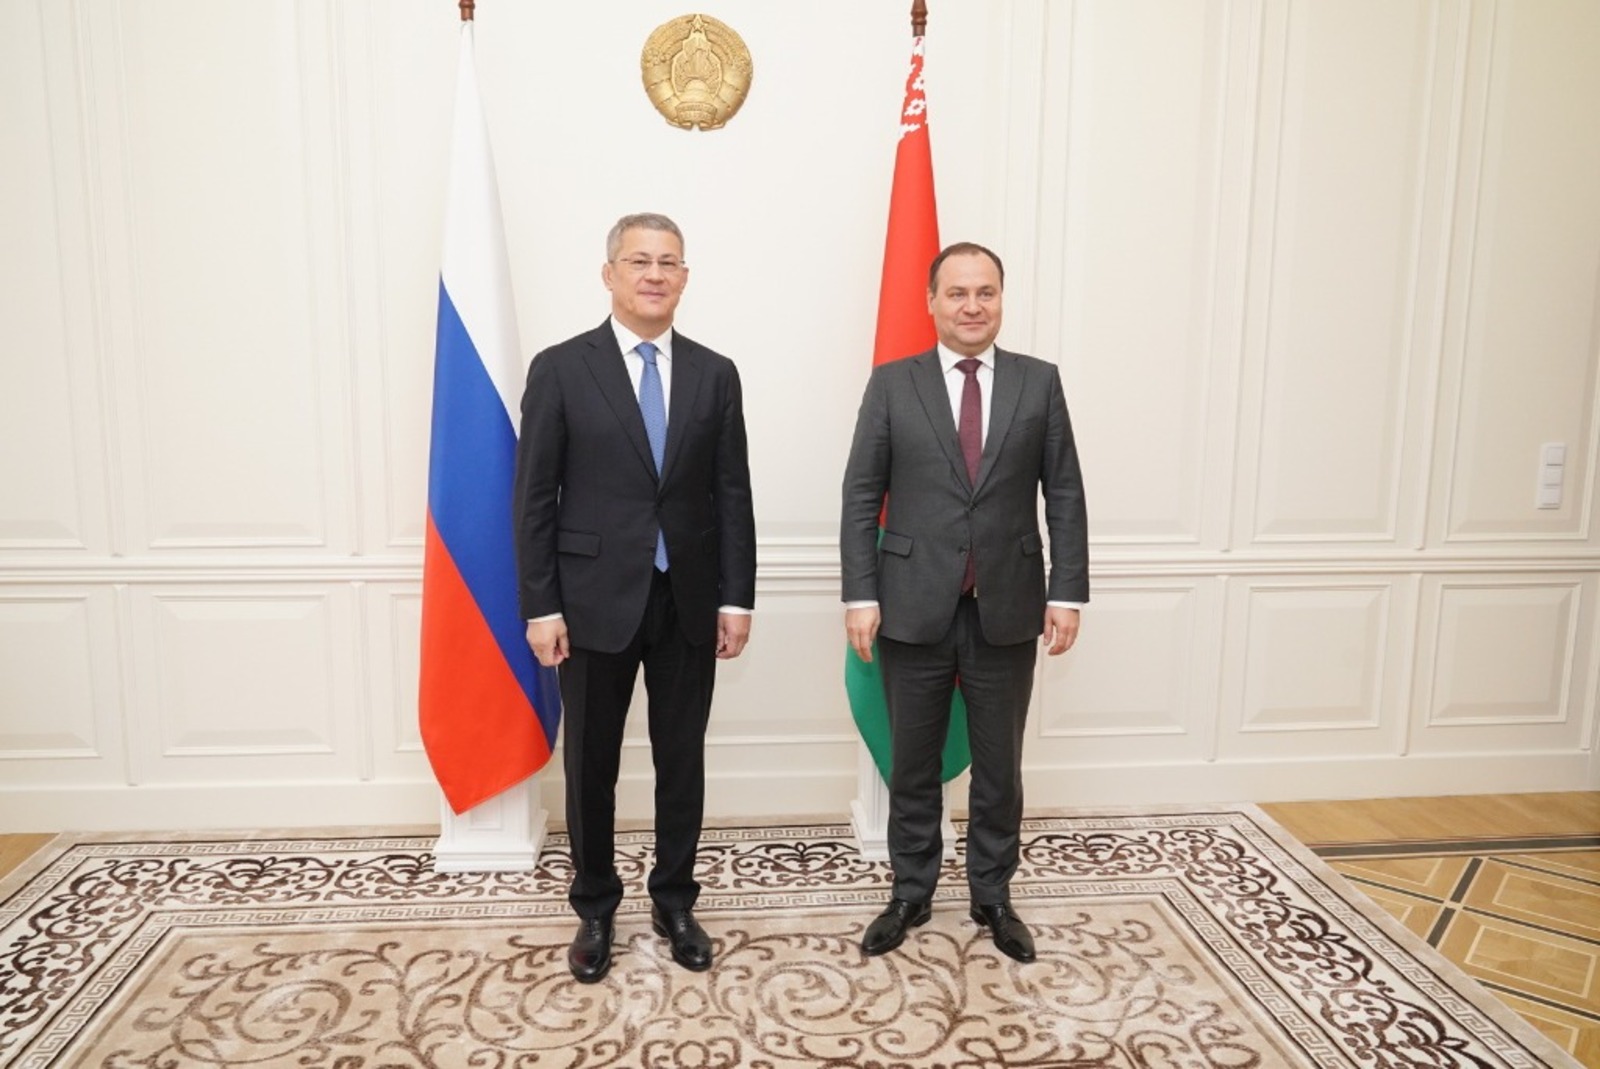 Рабочая встреча главы Башкортостана с премьер-министром Беларуси Романом Головченко